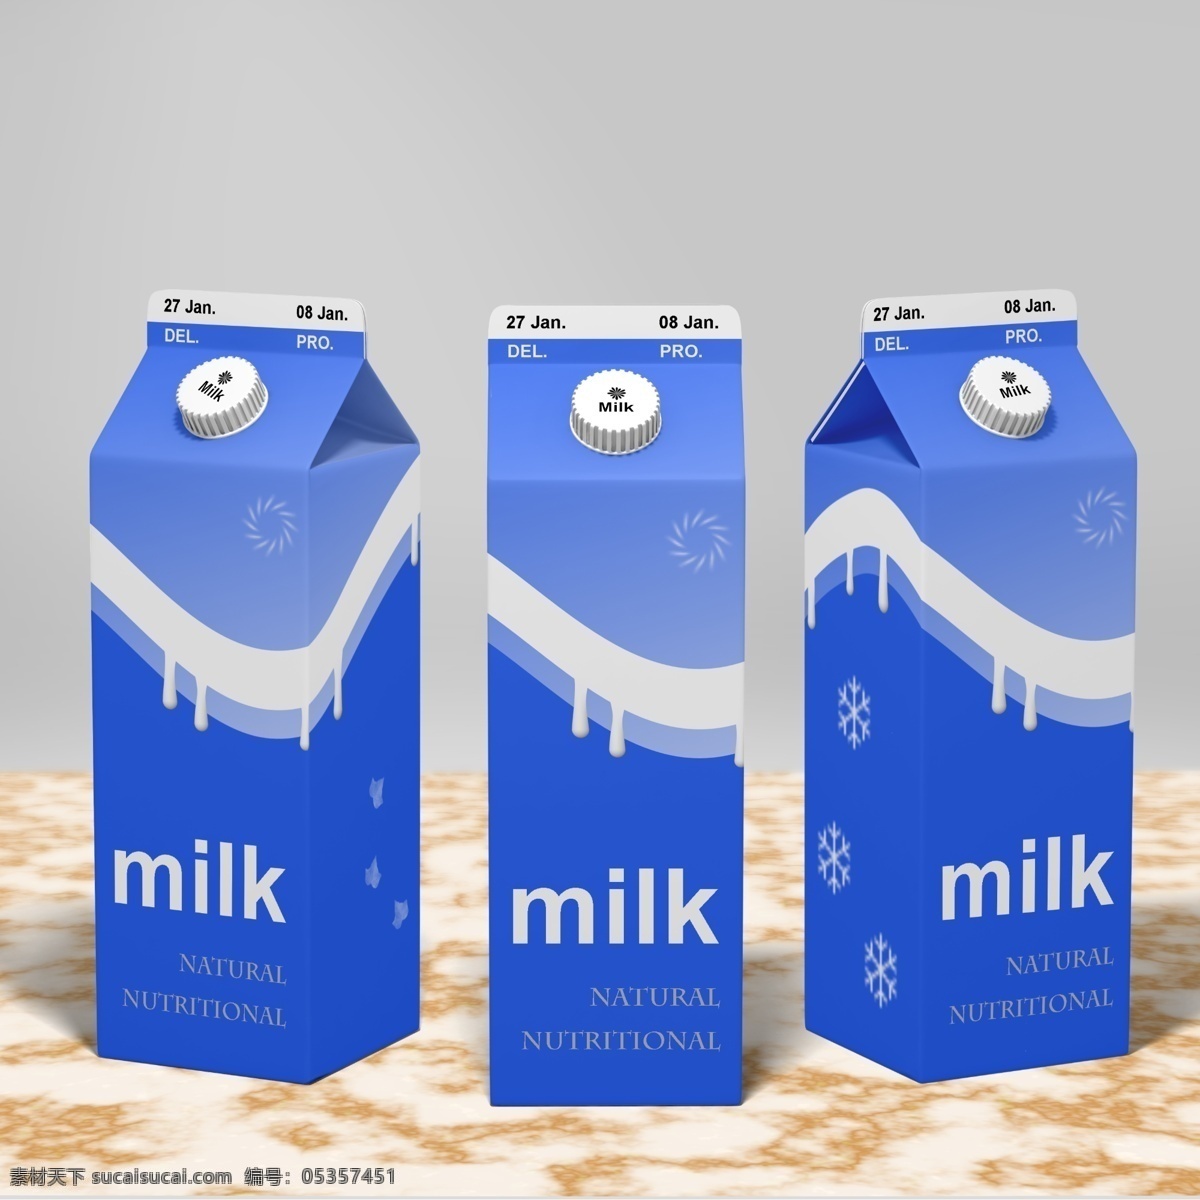 牛奶包装 包装素材 包装线面 包装平面图 包装设计图 psd素材 包装设计素材 包装设计模板 包装盒素材 灰色